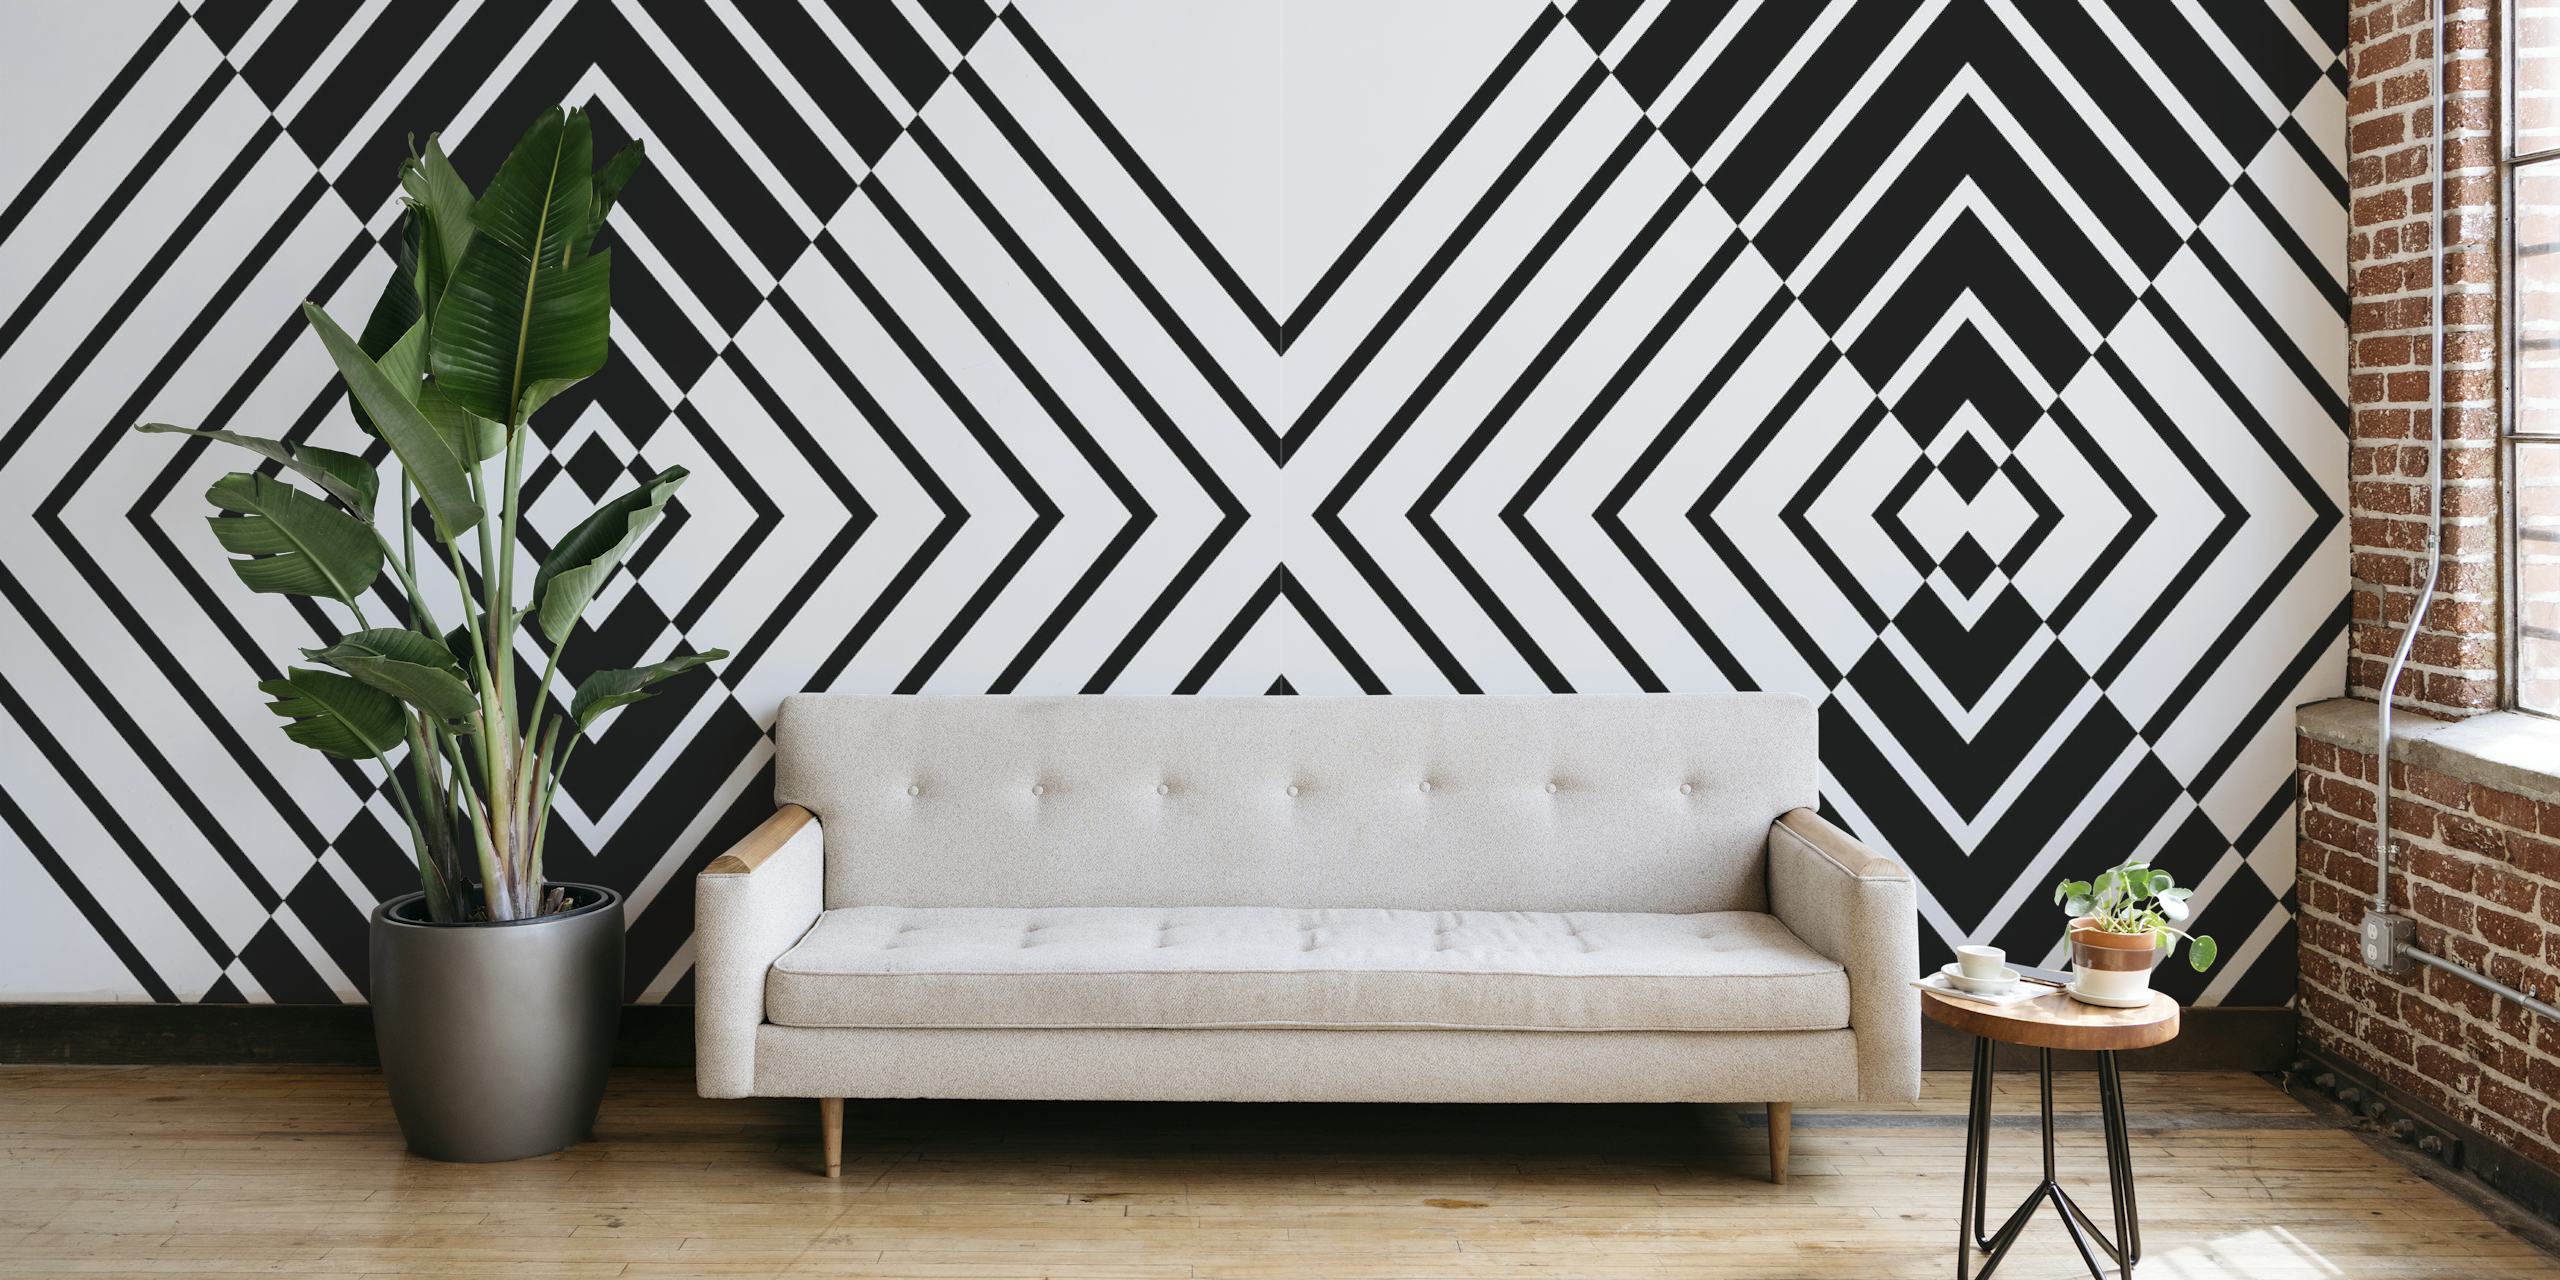 Fotomural vinílico de parede com padrão geométrico preto e branco criando um design abstrato ousado